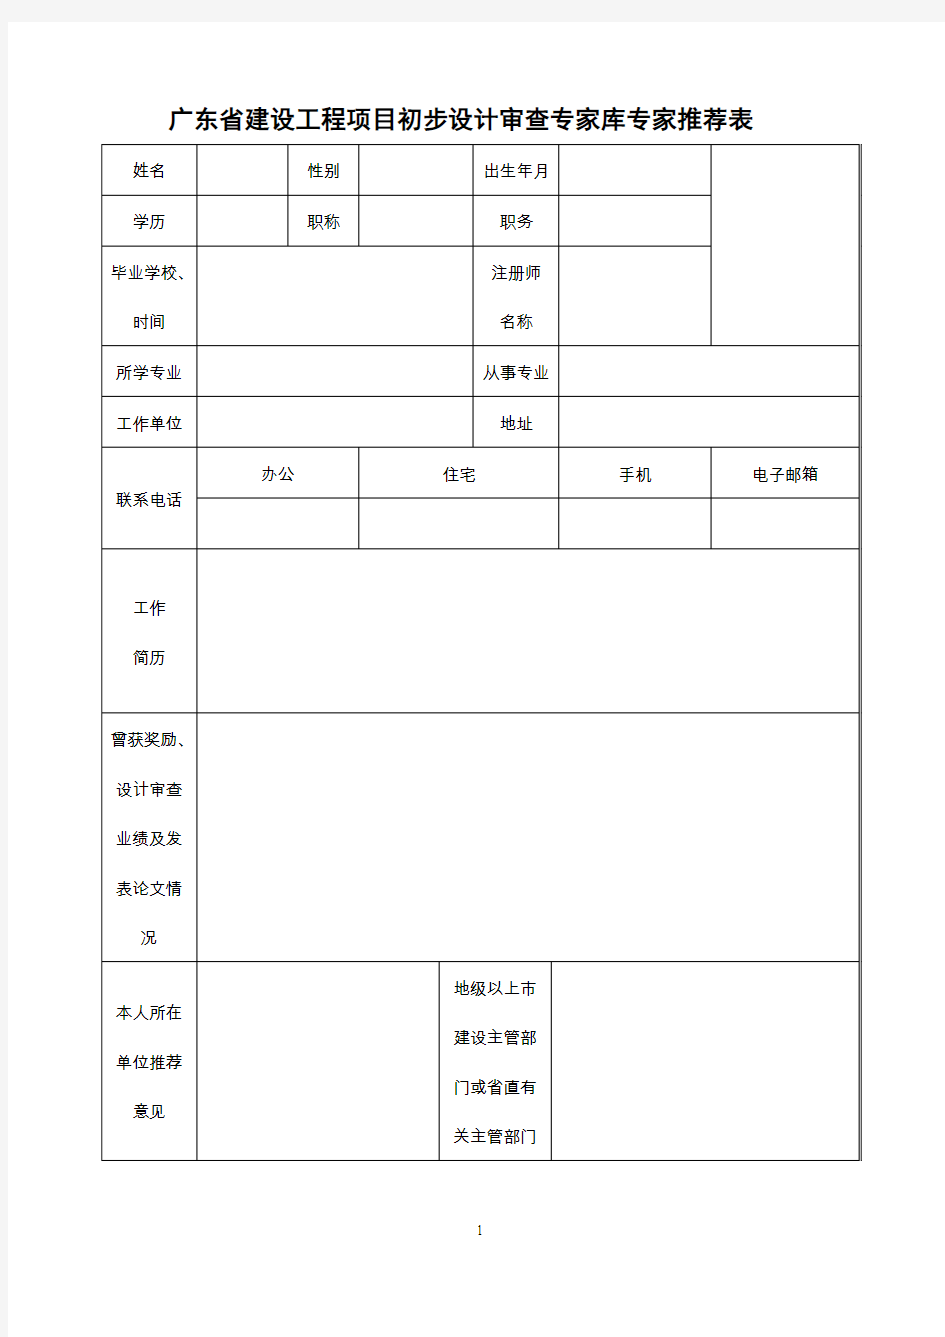 广东建设工程项目初步设计审查专家库专家推荐表